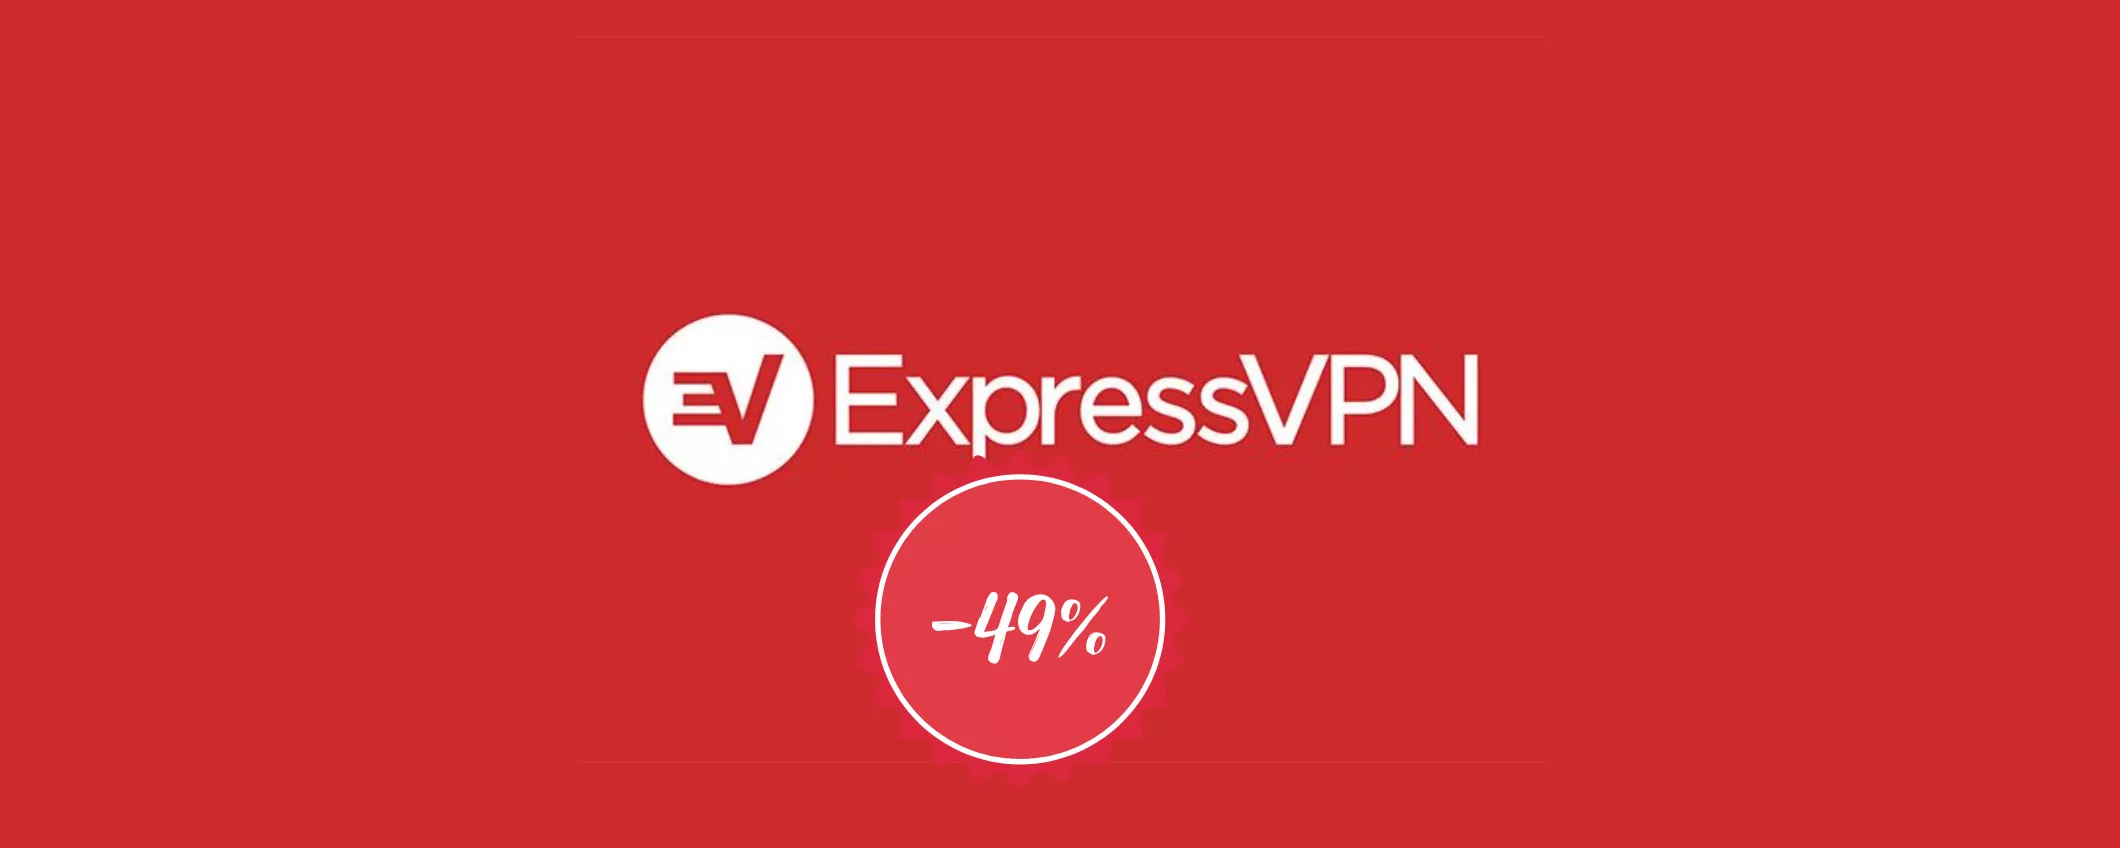 VPN veloce e sicura: scegli ExpressVPN in promo (-49%)